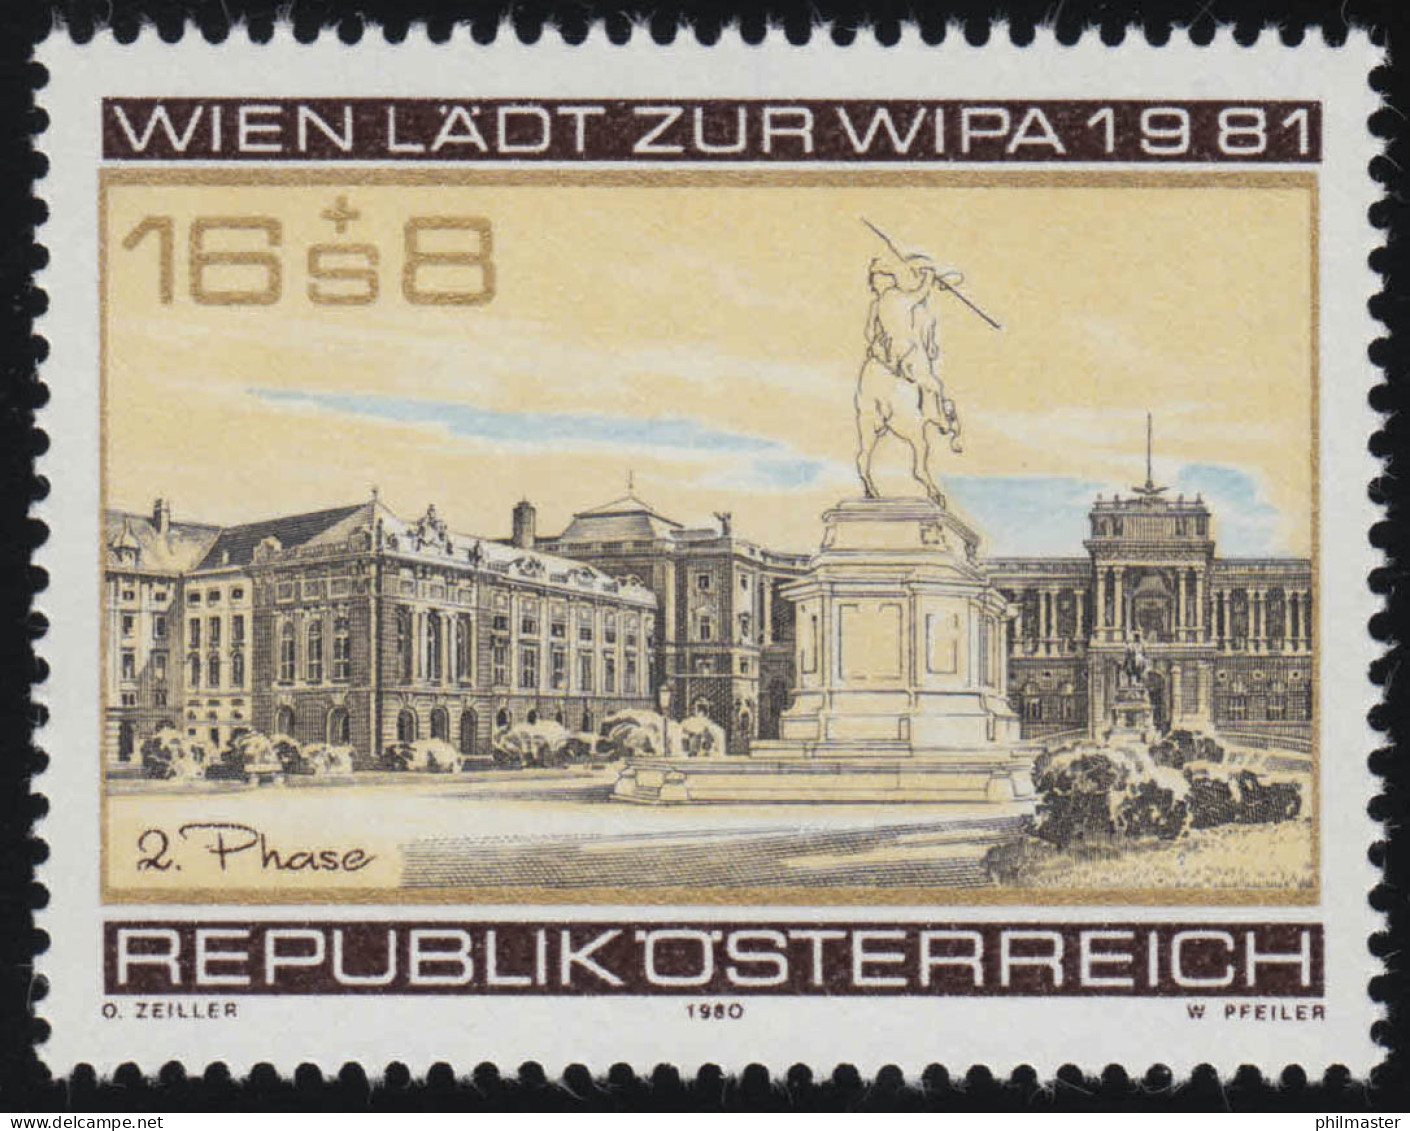 1662 WIPA 1981/ Wien, Heldenplatz, Denkmal, Hofburg, 2. Produktion 16 S + 8 S ** - Neufs